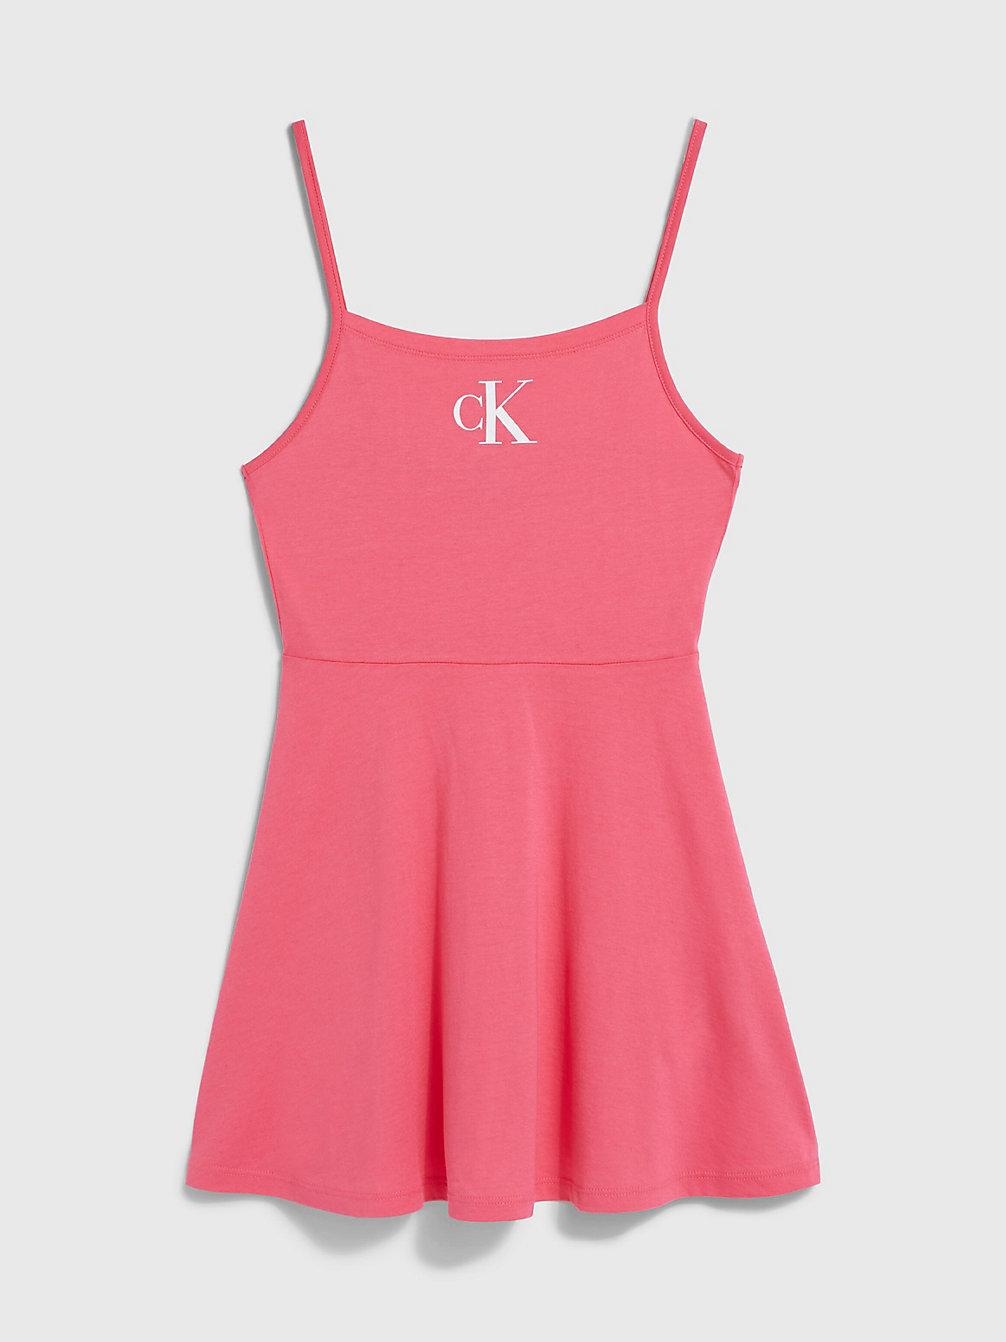 PINK FLASH Strandkleid Für Mädchen - CK Monogram undefined girls Calvin Klein